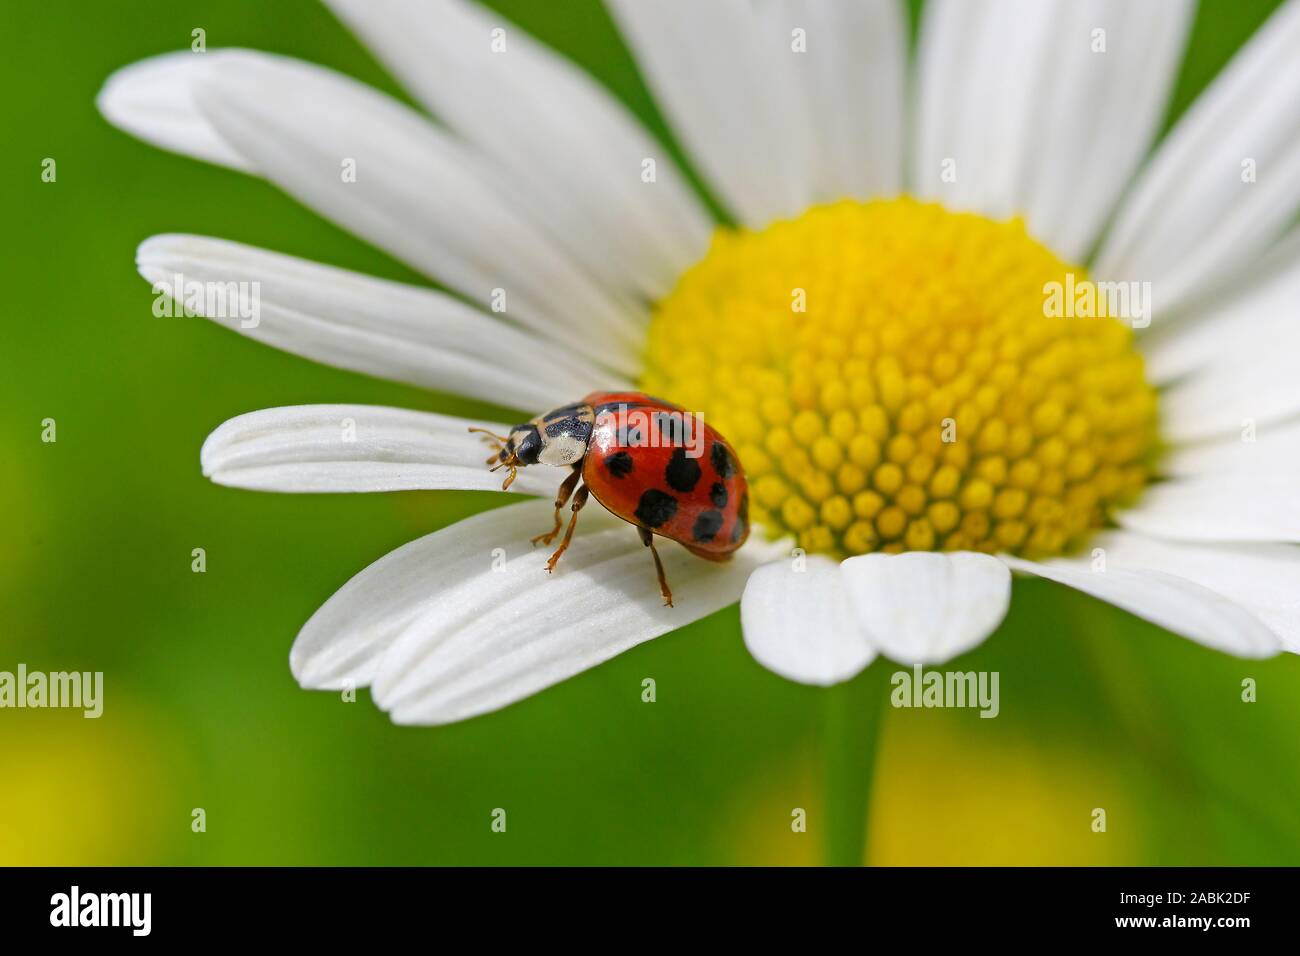 Señora asiática Harmonia axyridis (Escarabajos) en ojo de buey flor de Margarita. Alemania Foto de stock